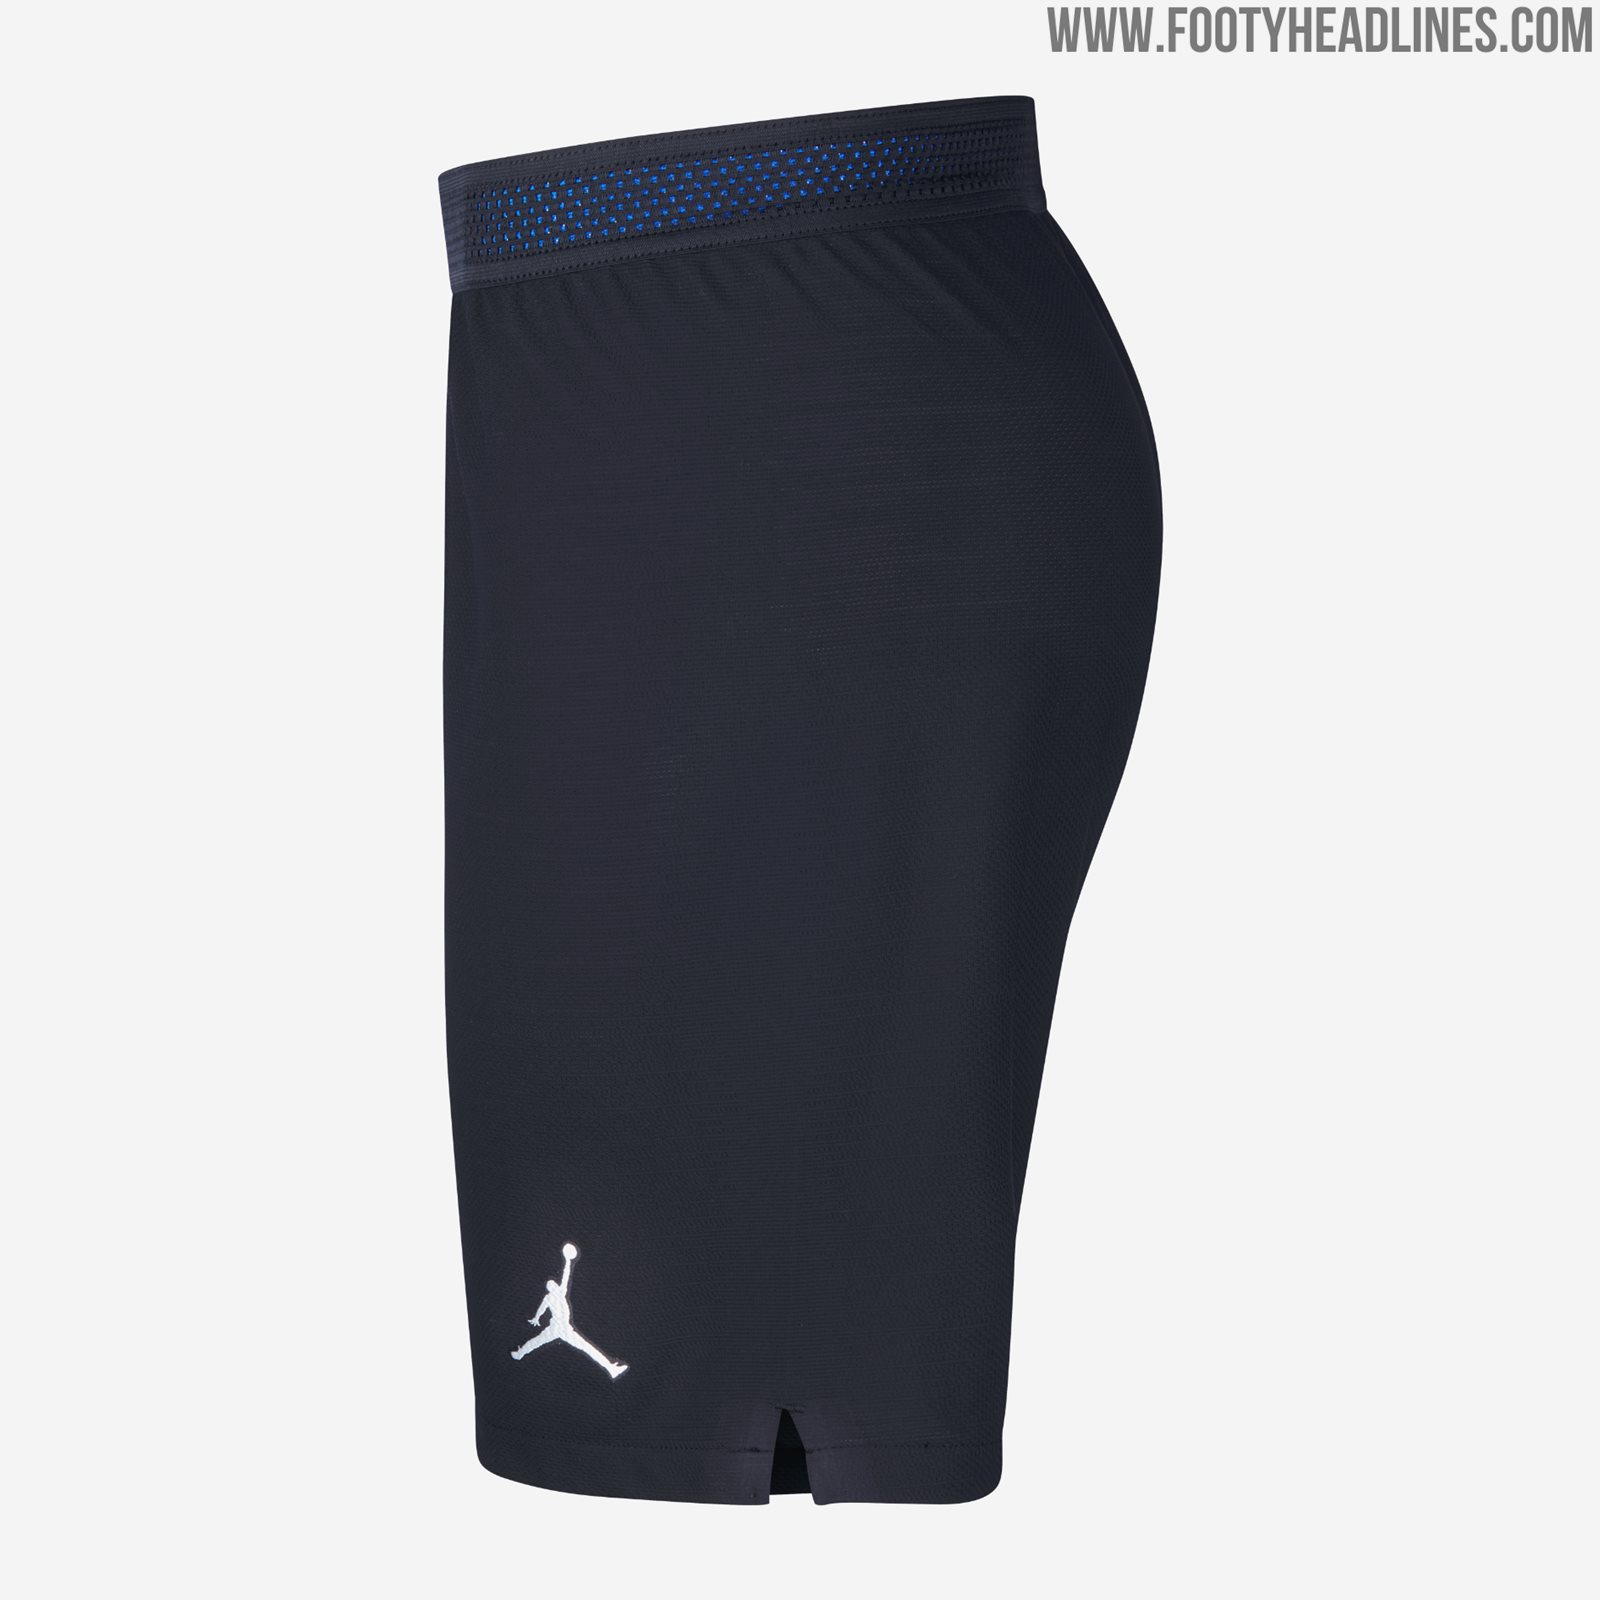 Nike Jordan PSG 4th Maillot 19/20 Homme